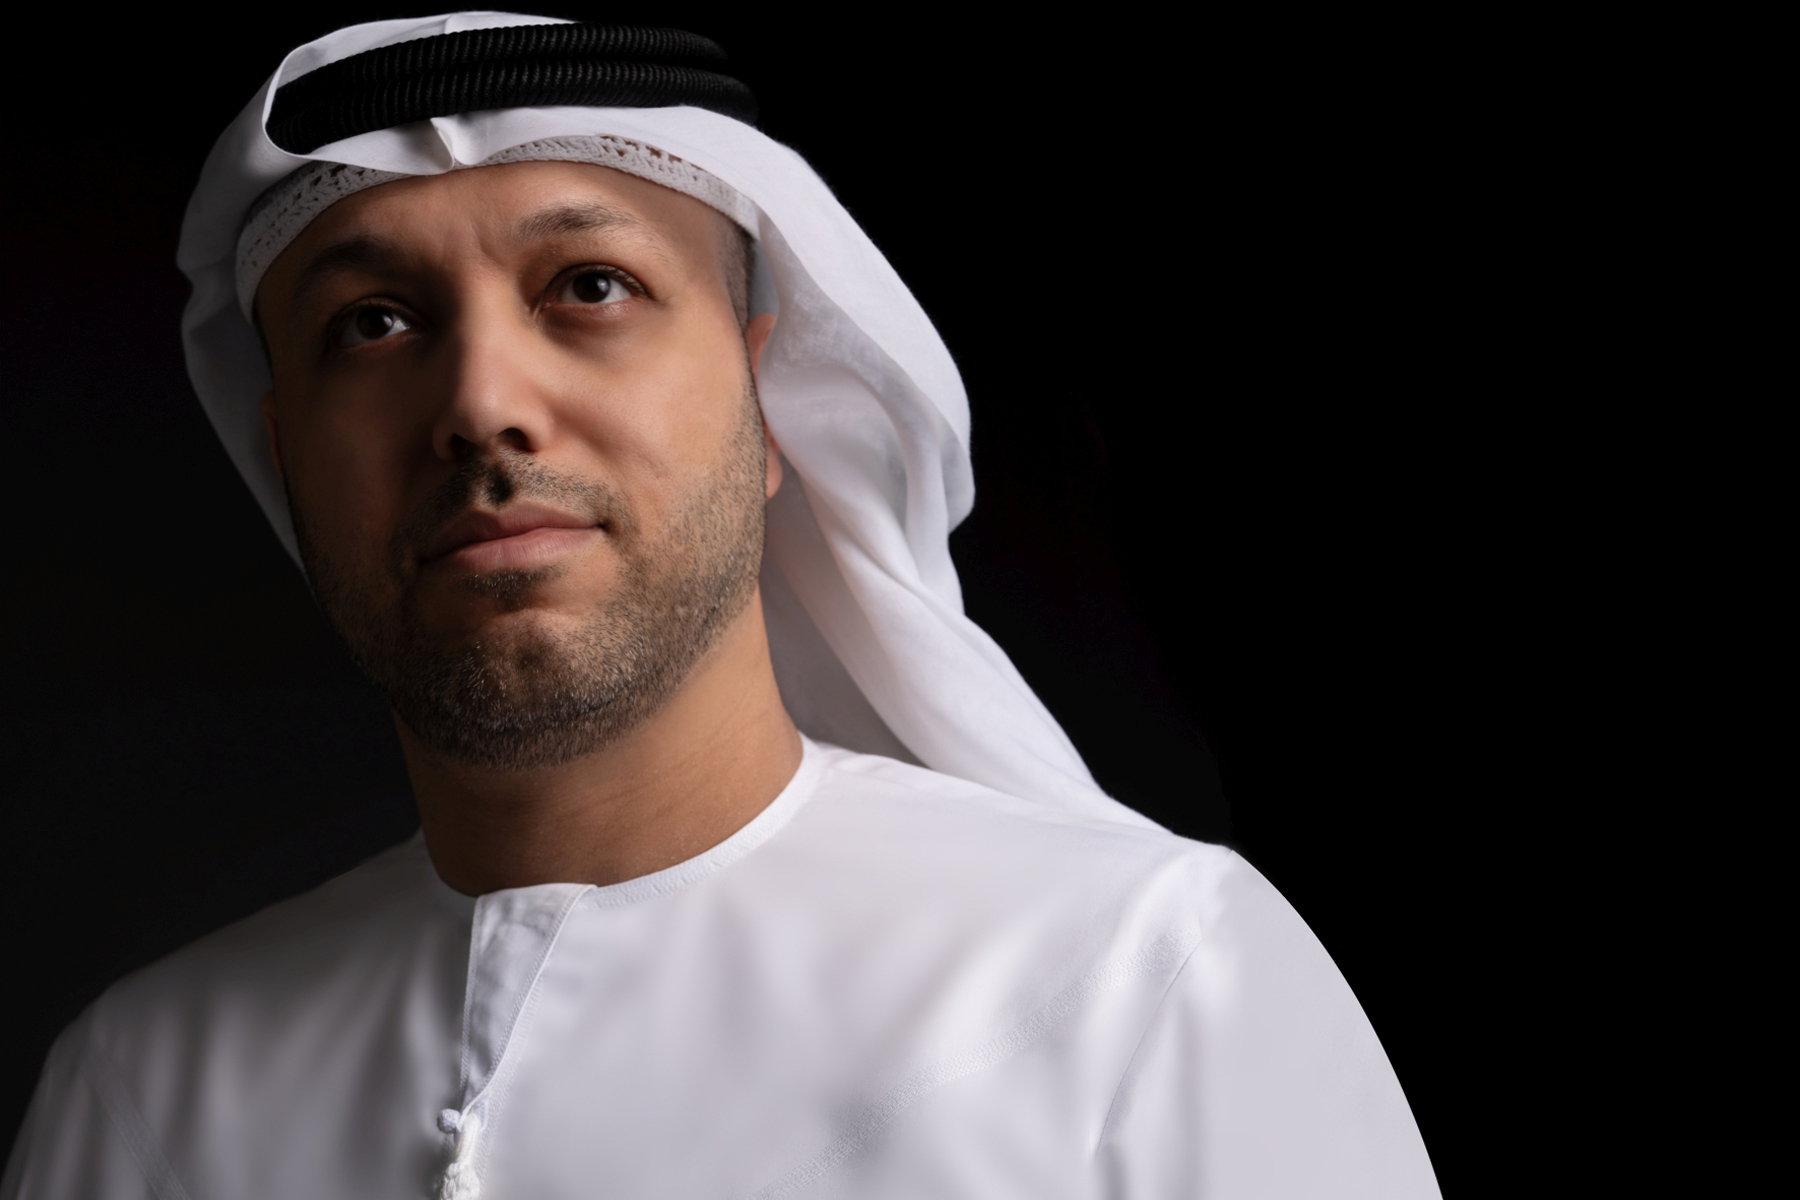 المؤلف الموسيقي الإماراتي إيهاب درويش يقدم عرضه العالمي «حكايات» في مهرجان أبوظبي 2021